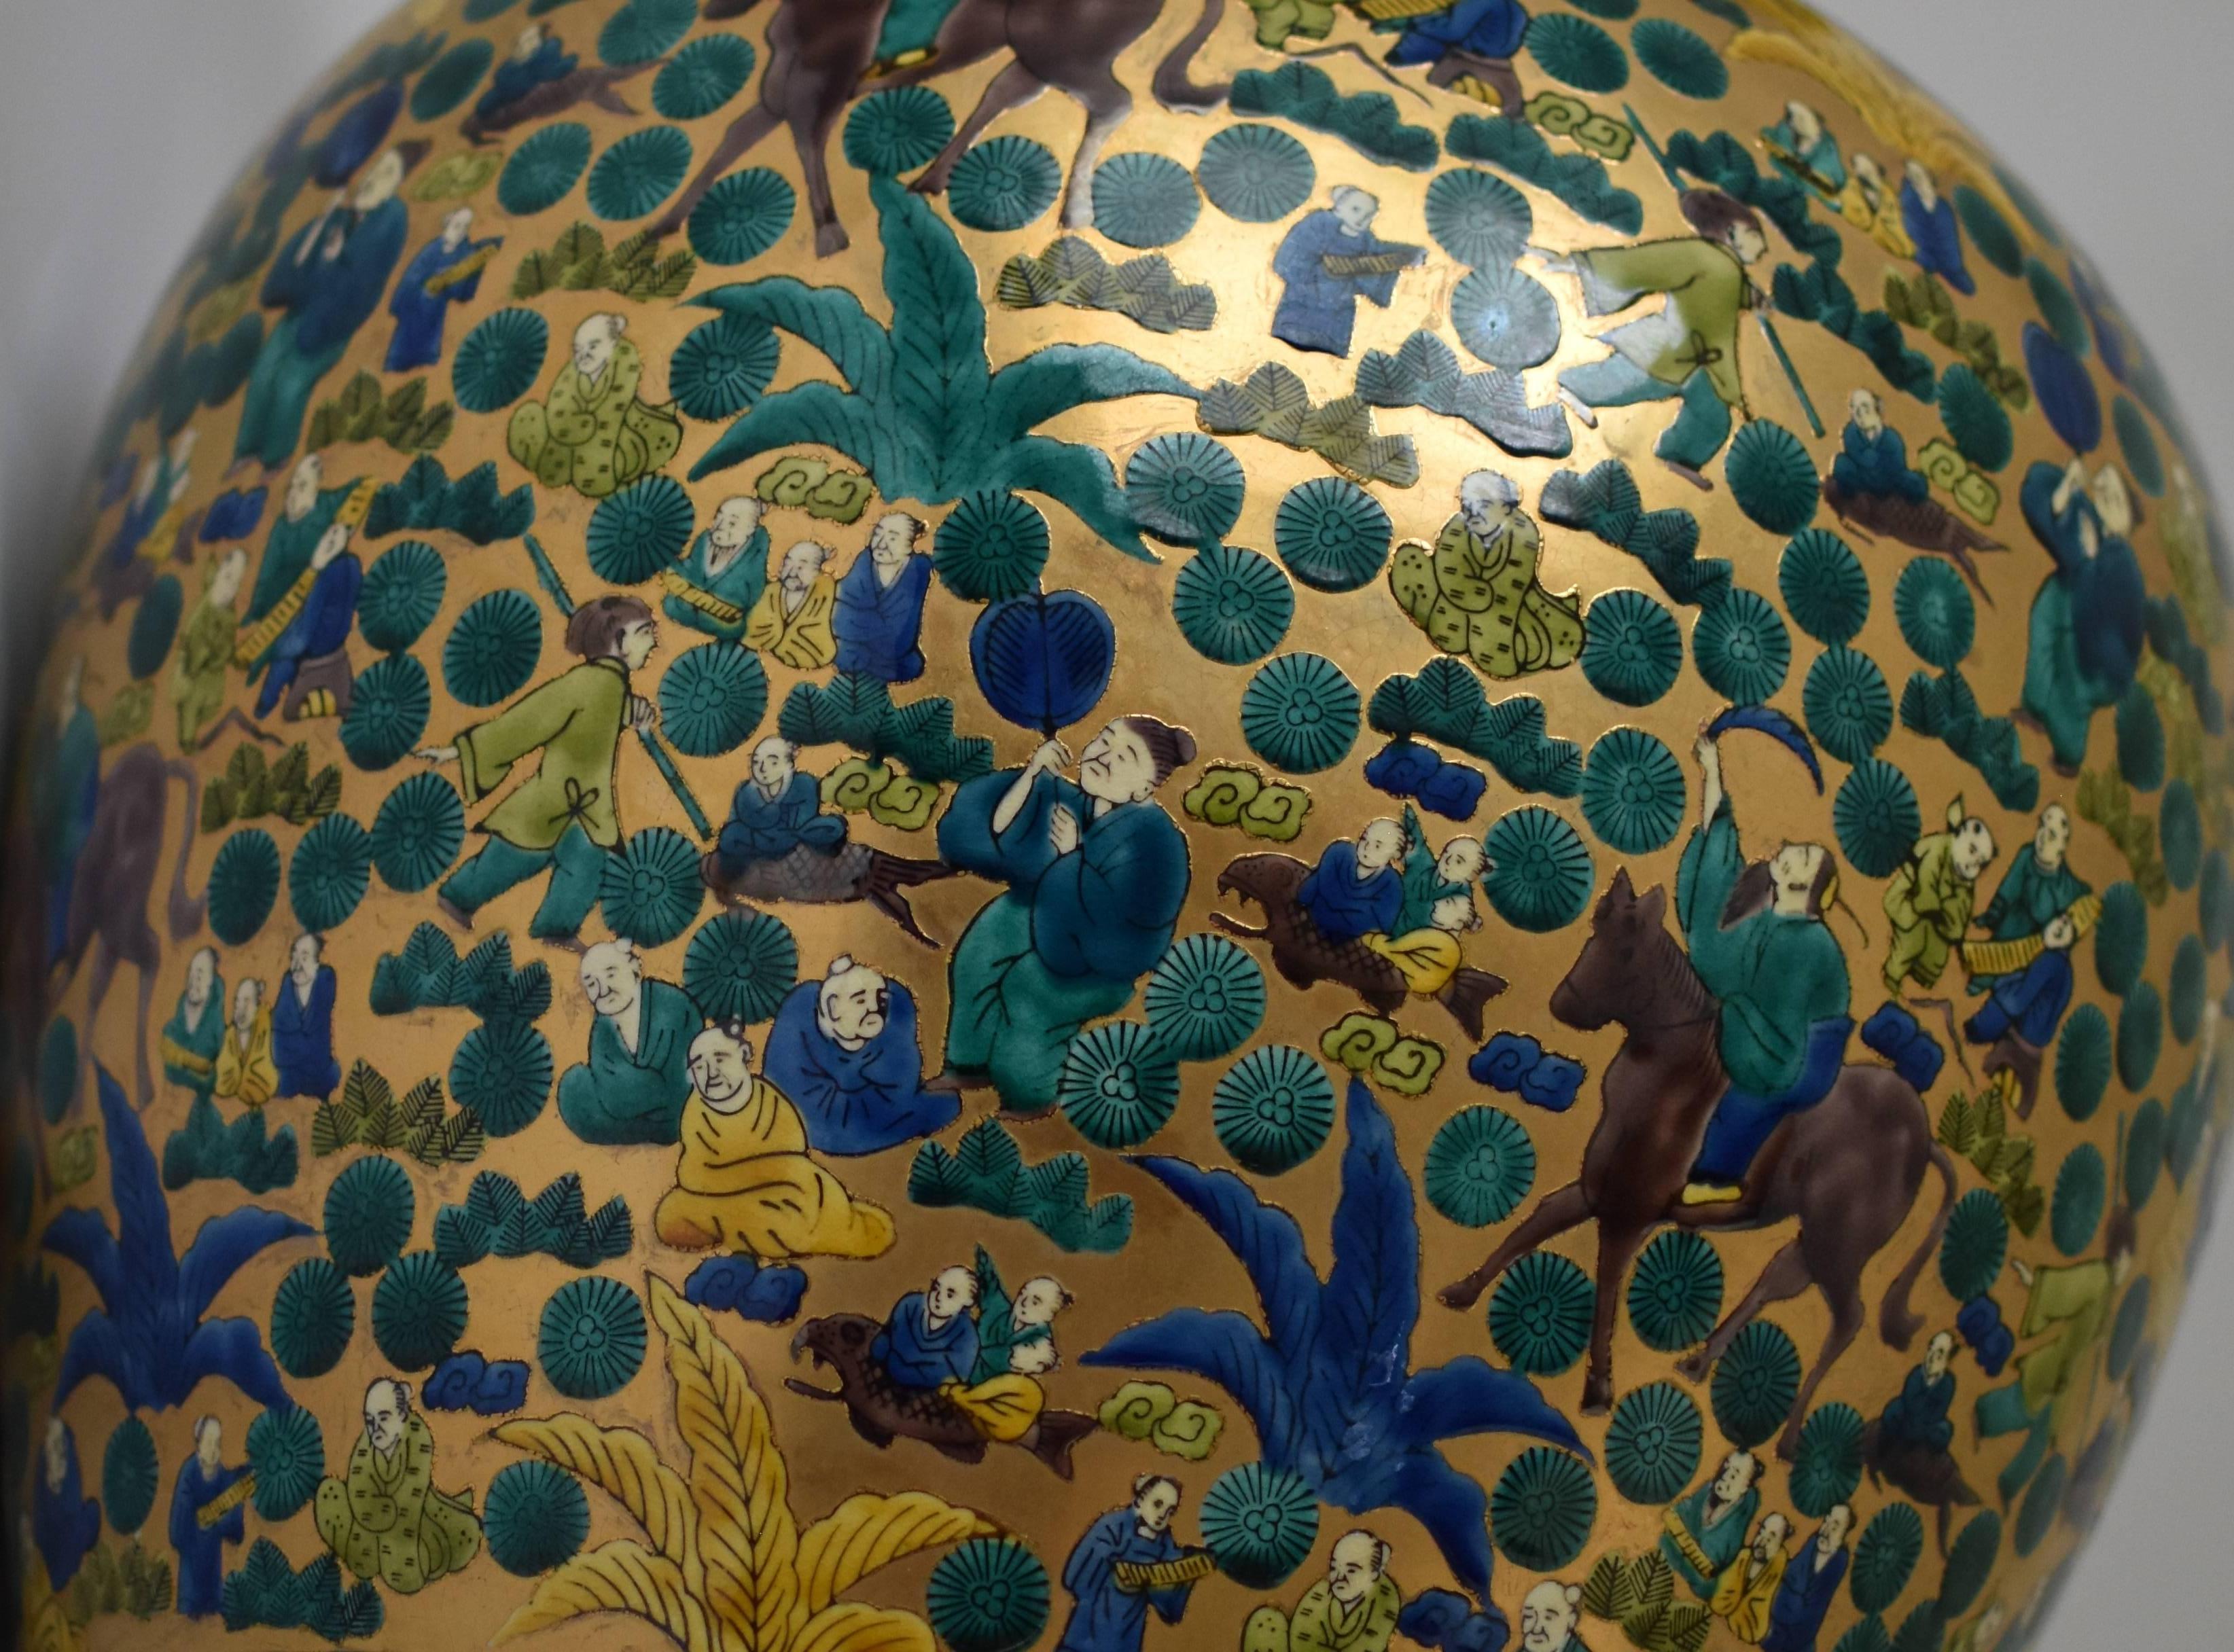 Extraordinaire grand vase décoratif japonais contemporain en porcelaine dorée de qualité musée, peint à la main de façon extrêmement complexe dans un style Kutani Mokubei à couper le souffle.  sur fond d'or pur. L'artiste a utilisé le jaune, le